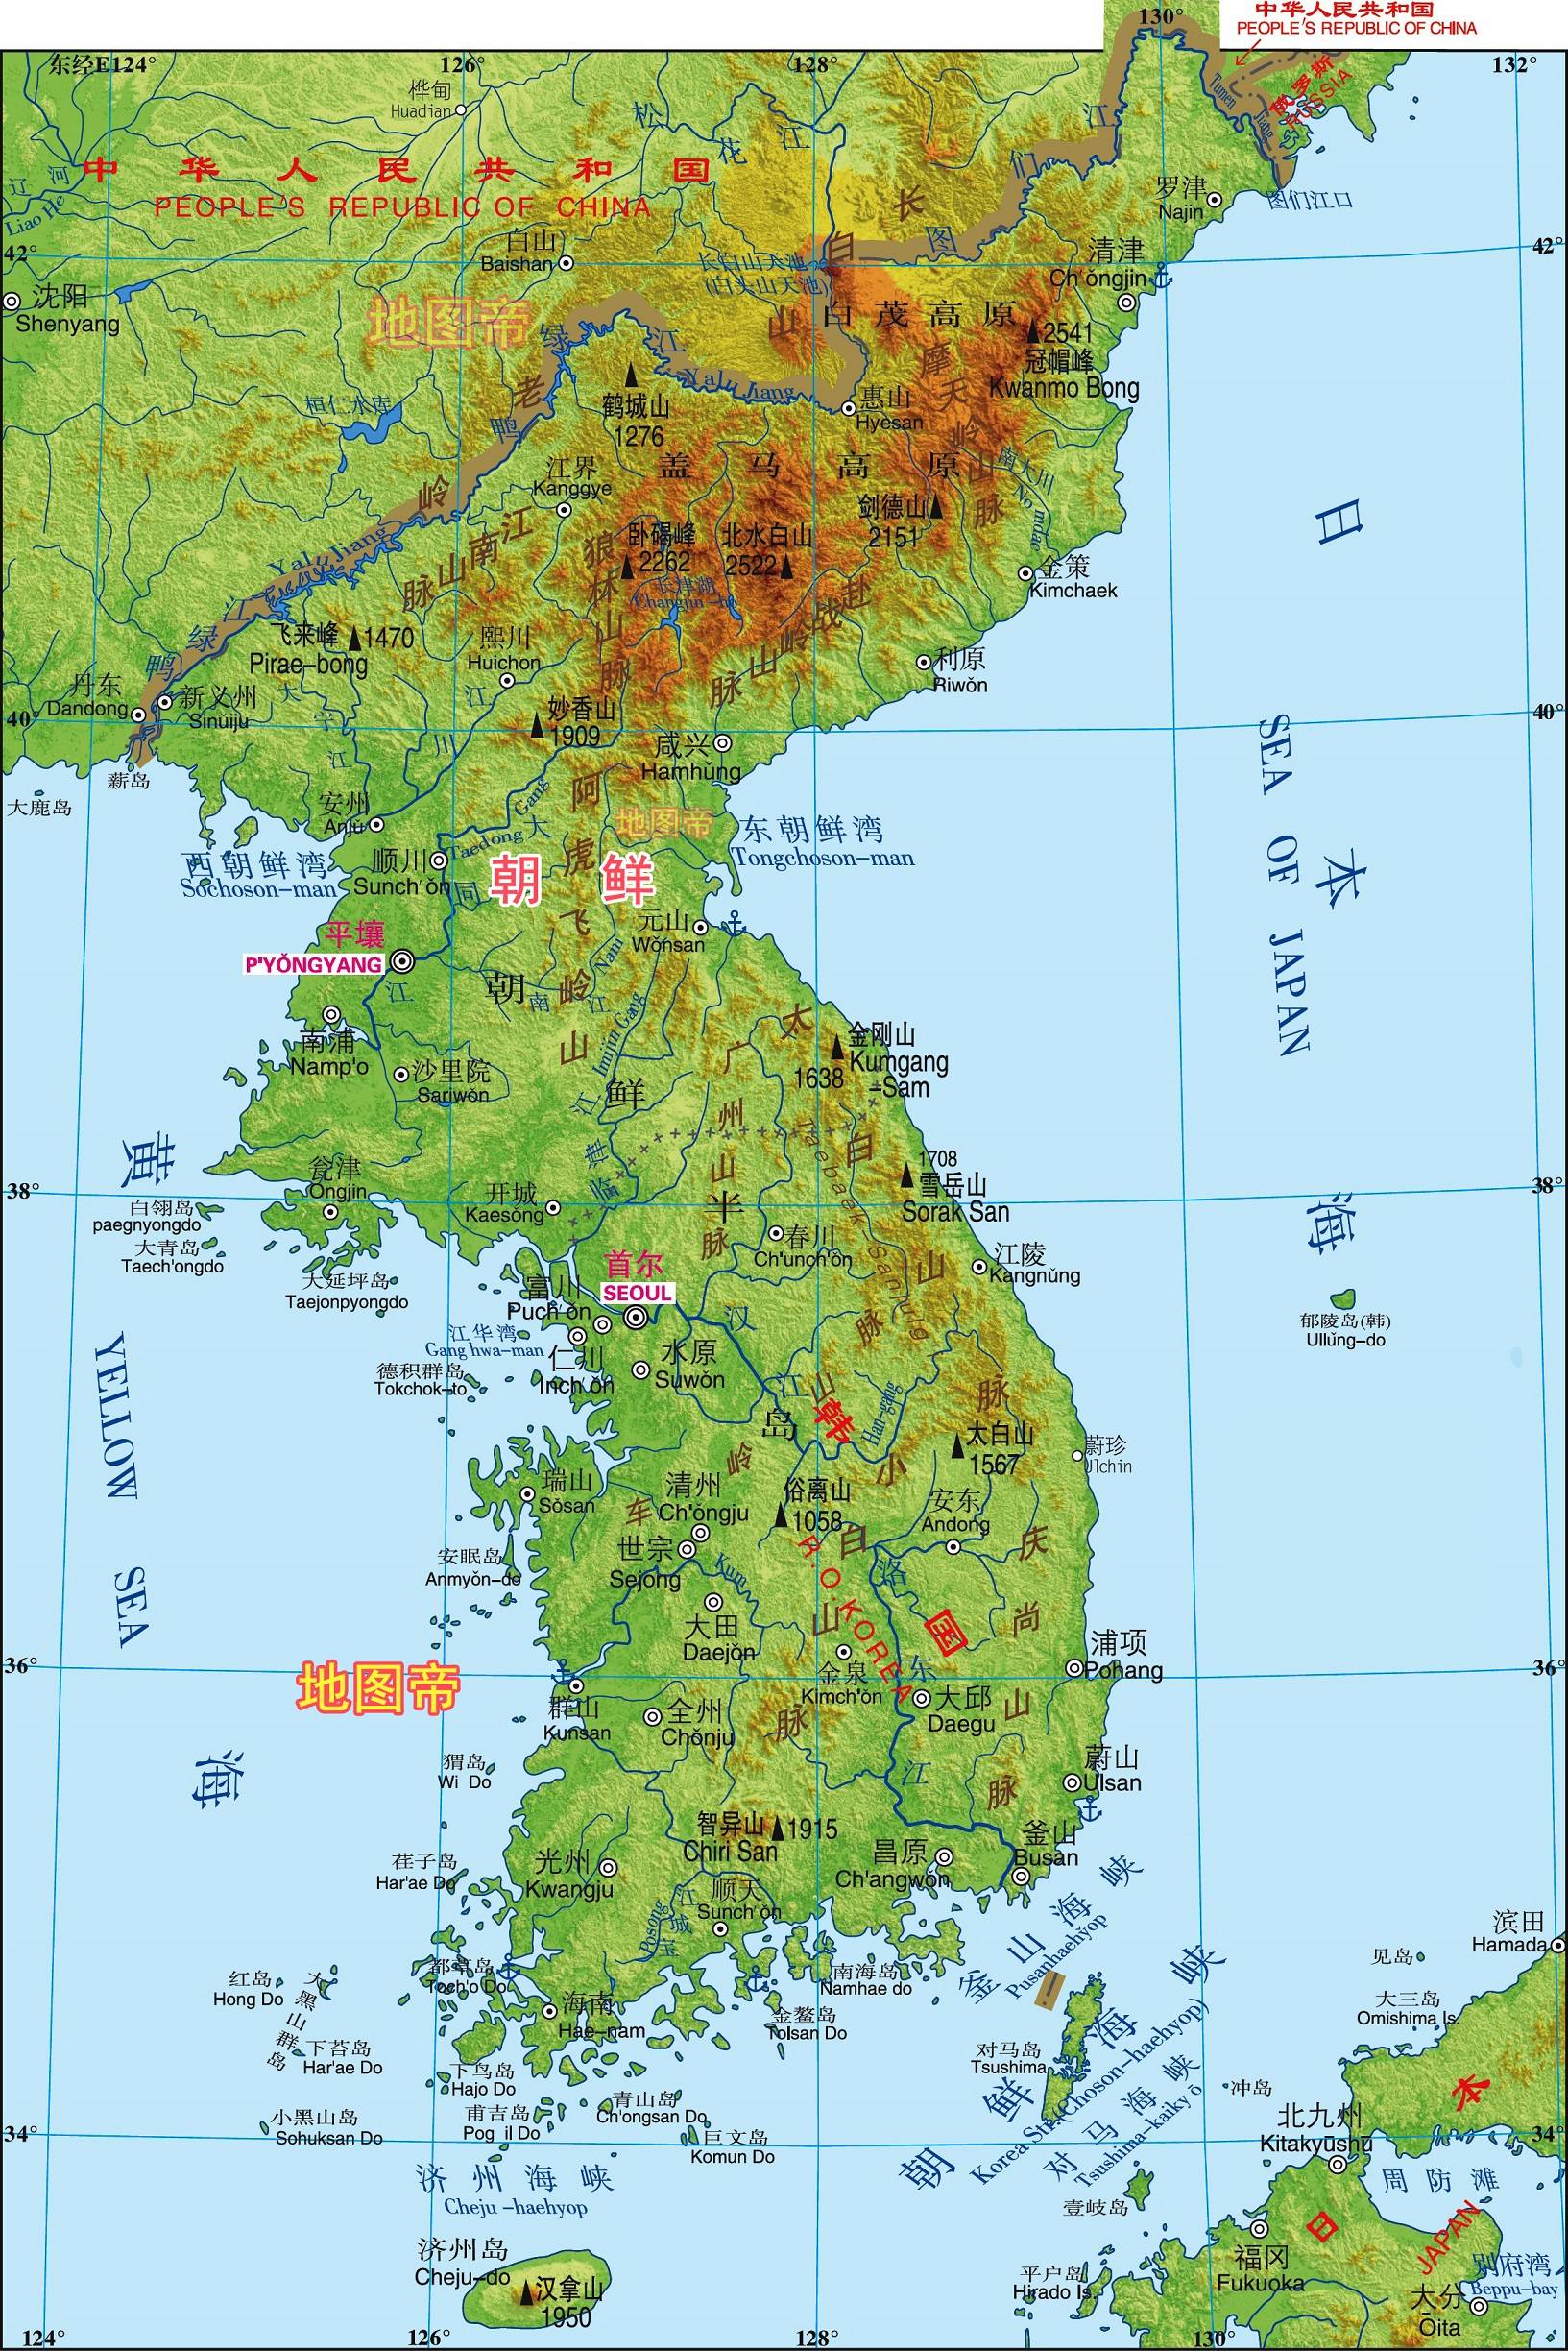 好好的朝鲜王国,为何改名大韩帝国?